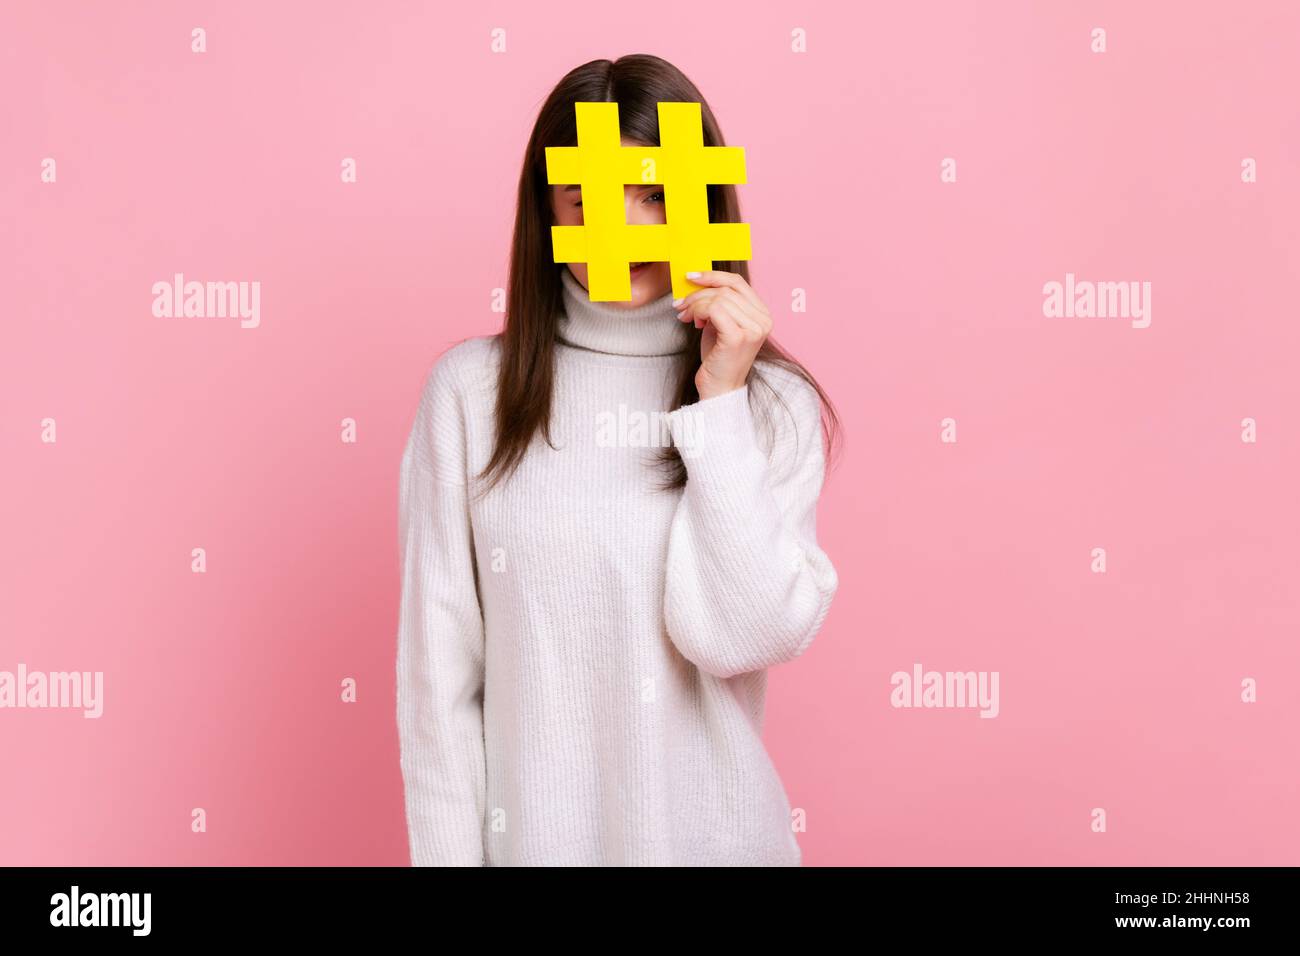 Weibliche Gesicht mit Social-Media-Hashtag-Symbol, empfehlen, trendige Inhalte folgen, Blog, tragen weißen lässigen Stil Pullover. Innenaufnahme des Studios isoliert auf rosa Hintergrund. Stockfoto